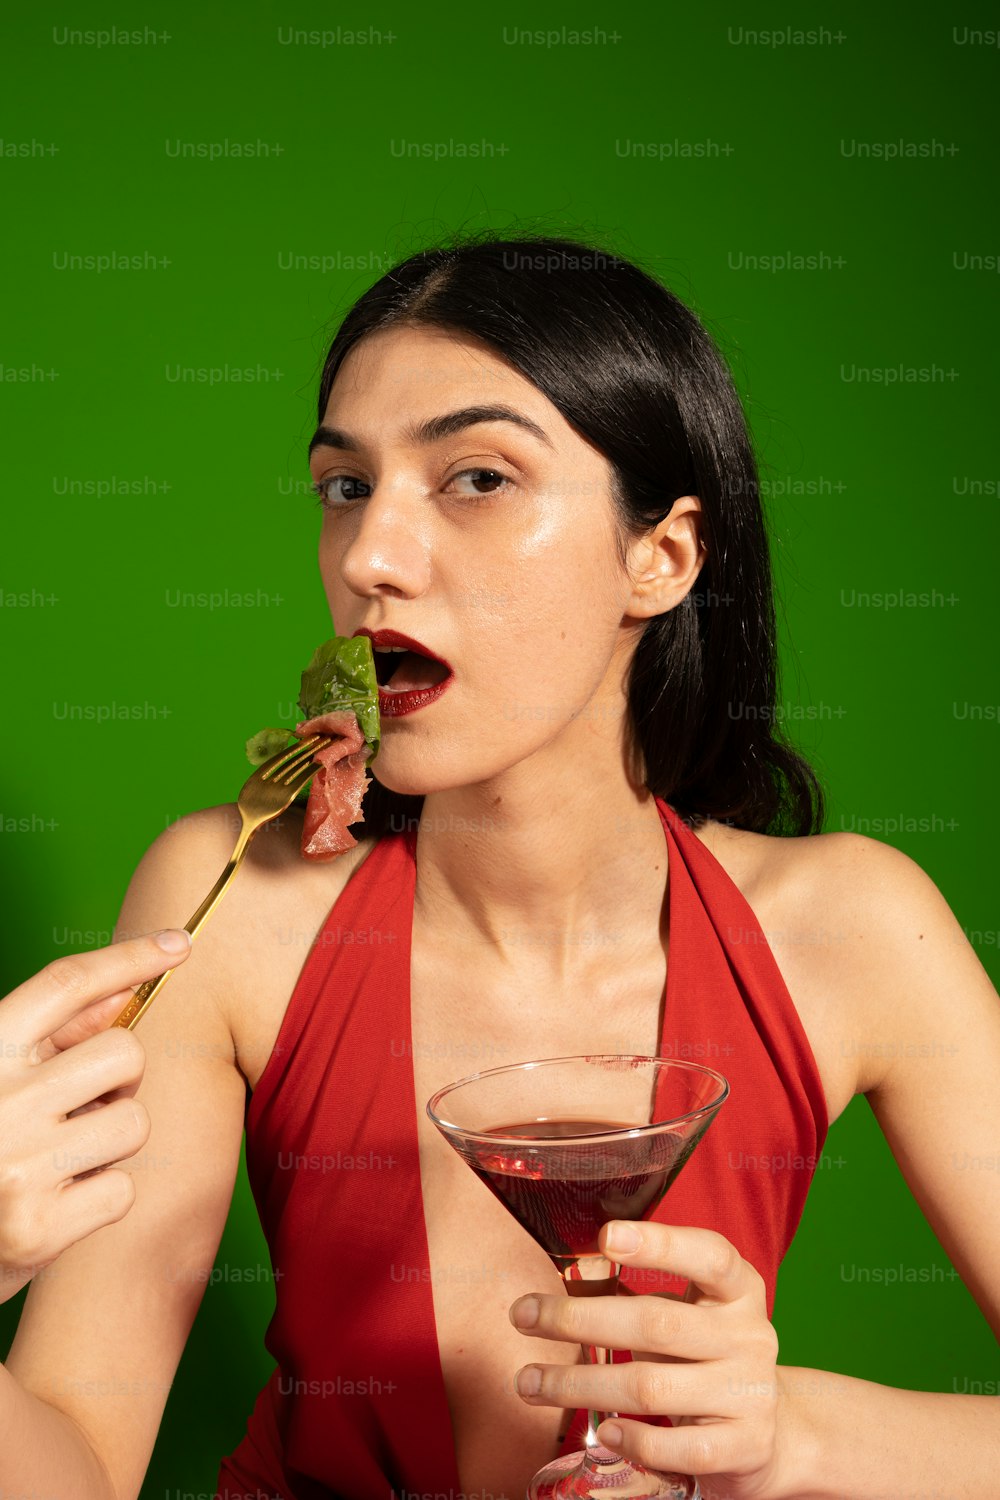 Una mujer con un vestido rojo comiendo un pedazo de comida